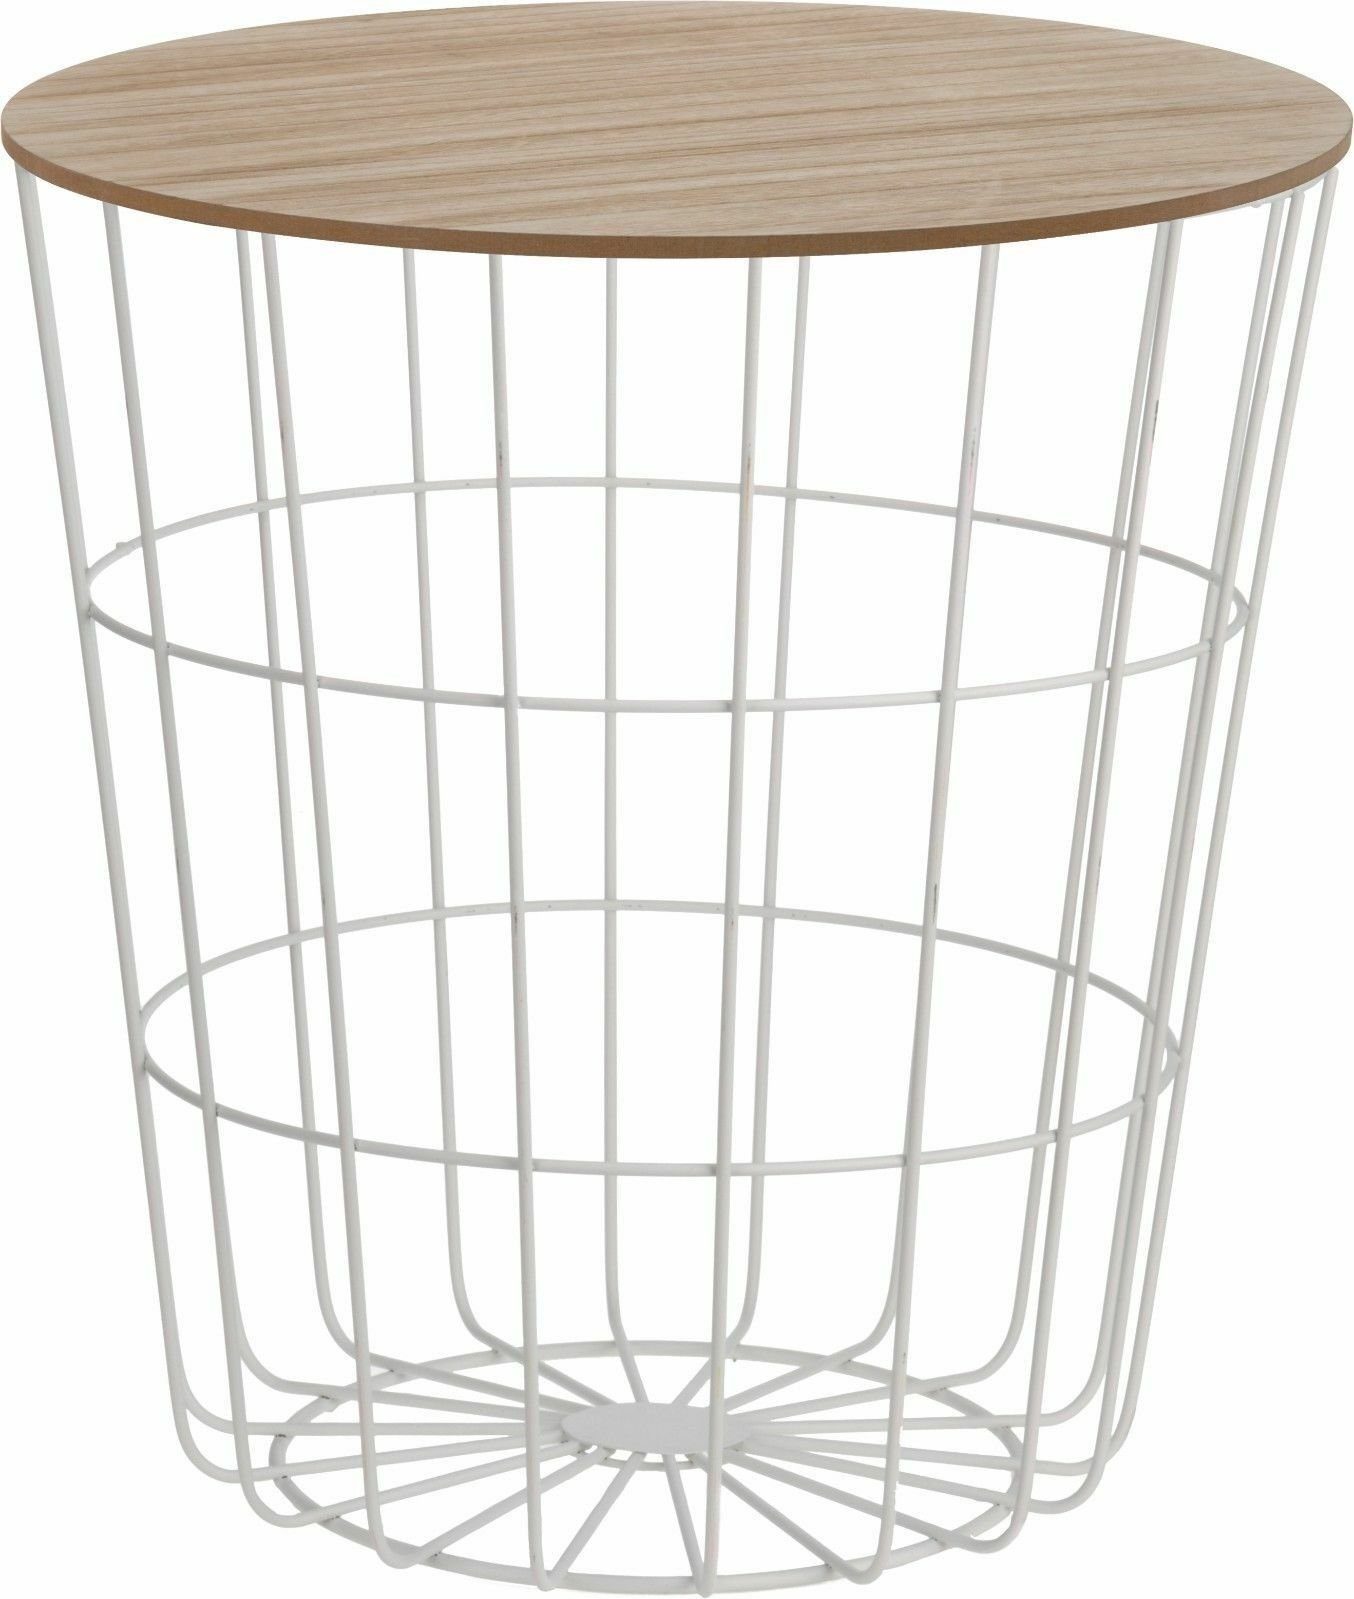 Meinposten Beistelltisch Tisch mit Stauraum Ø 39 cm H=41 cm Metall/Holz Nachttisch weiß, Durchmesser ca. 39 cm Höhe ca. 41 cm